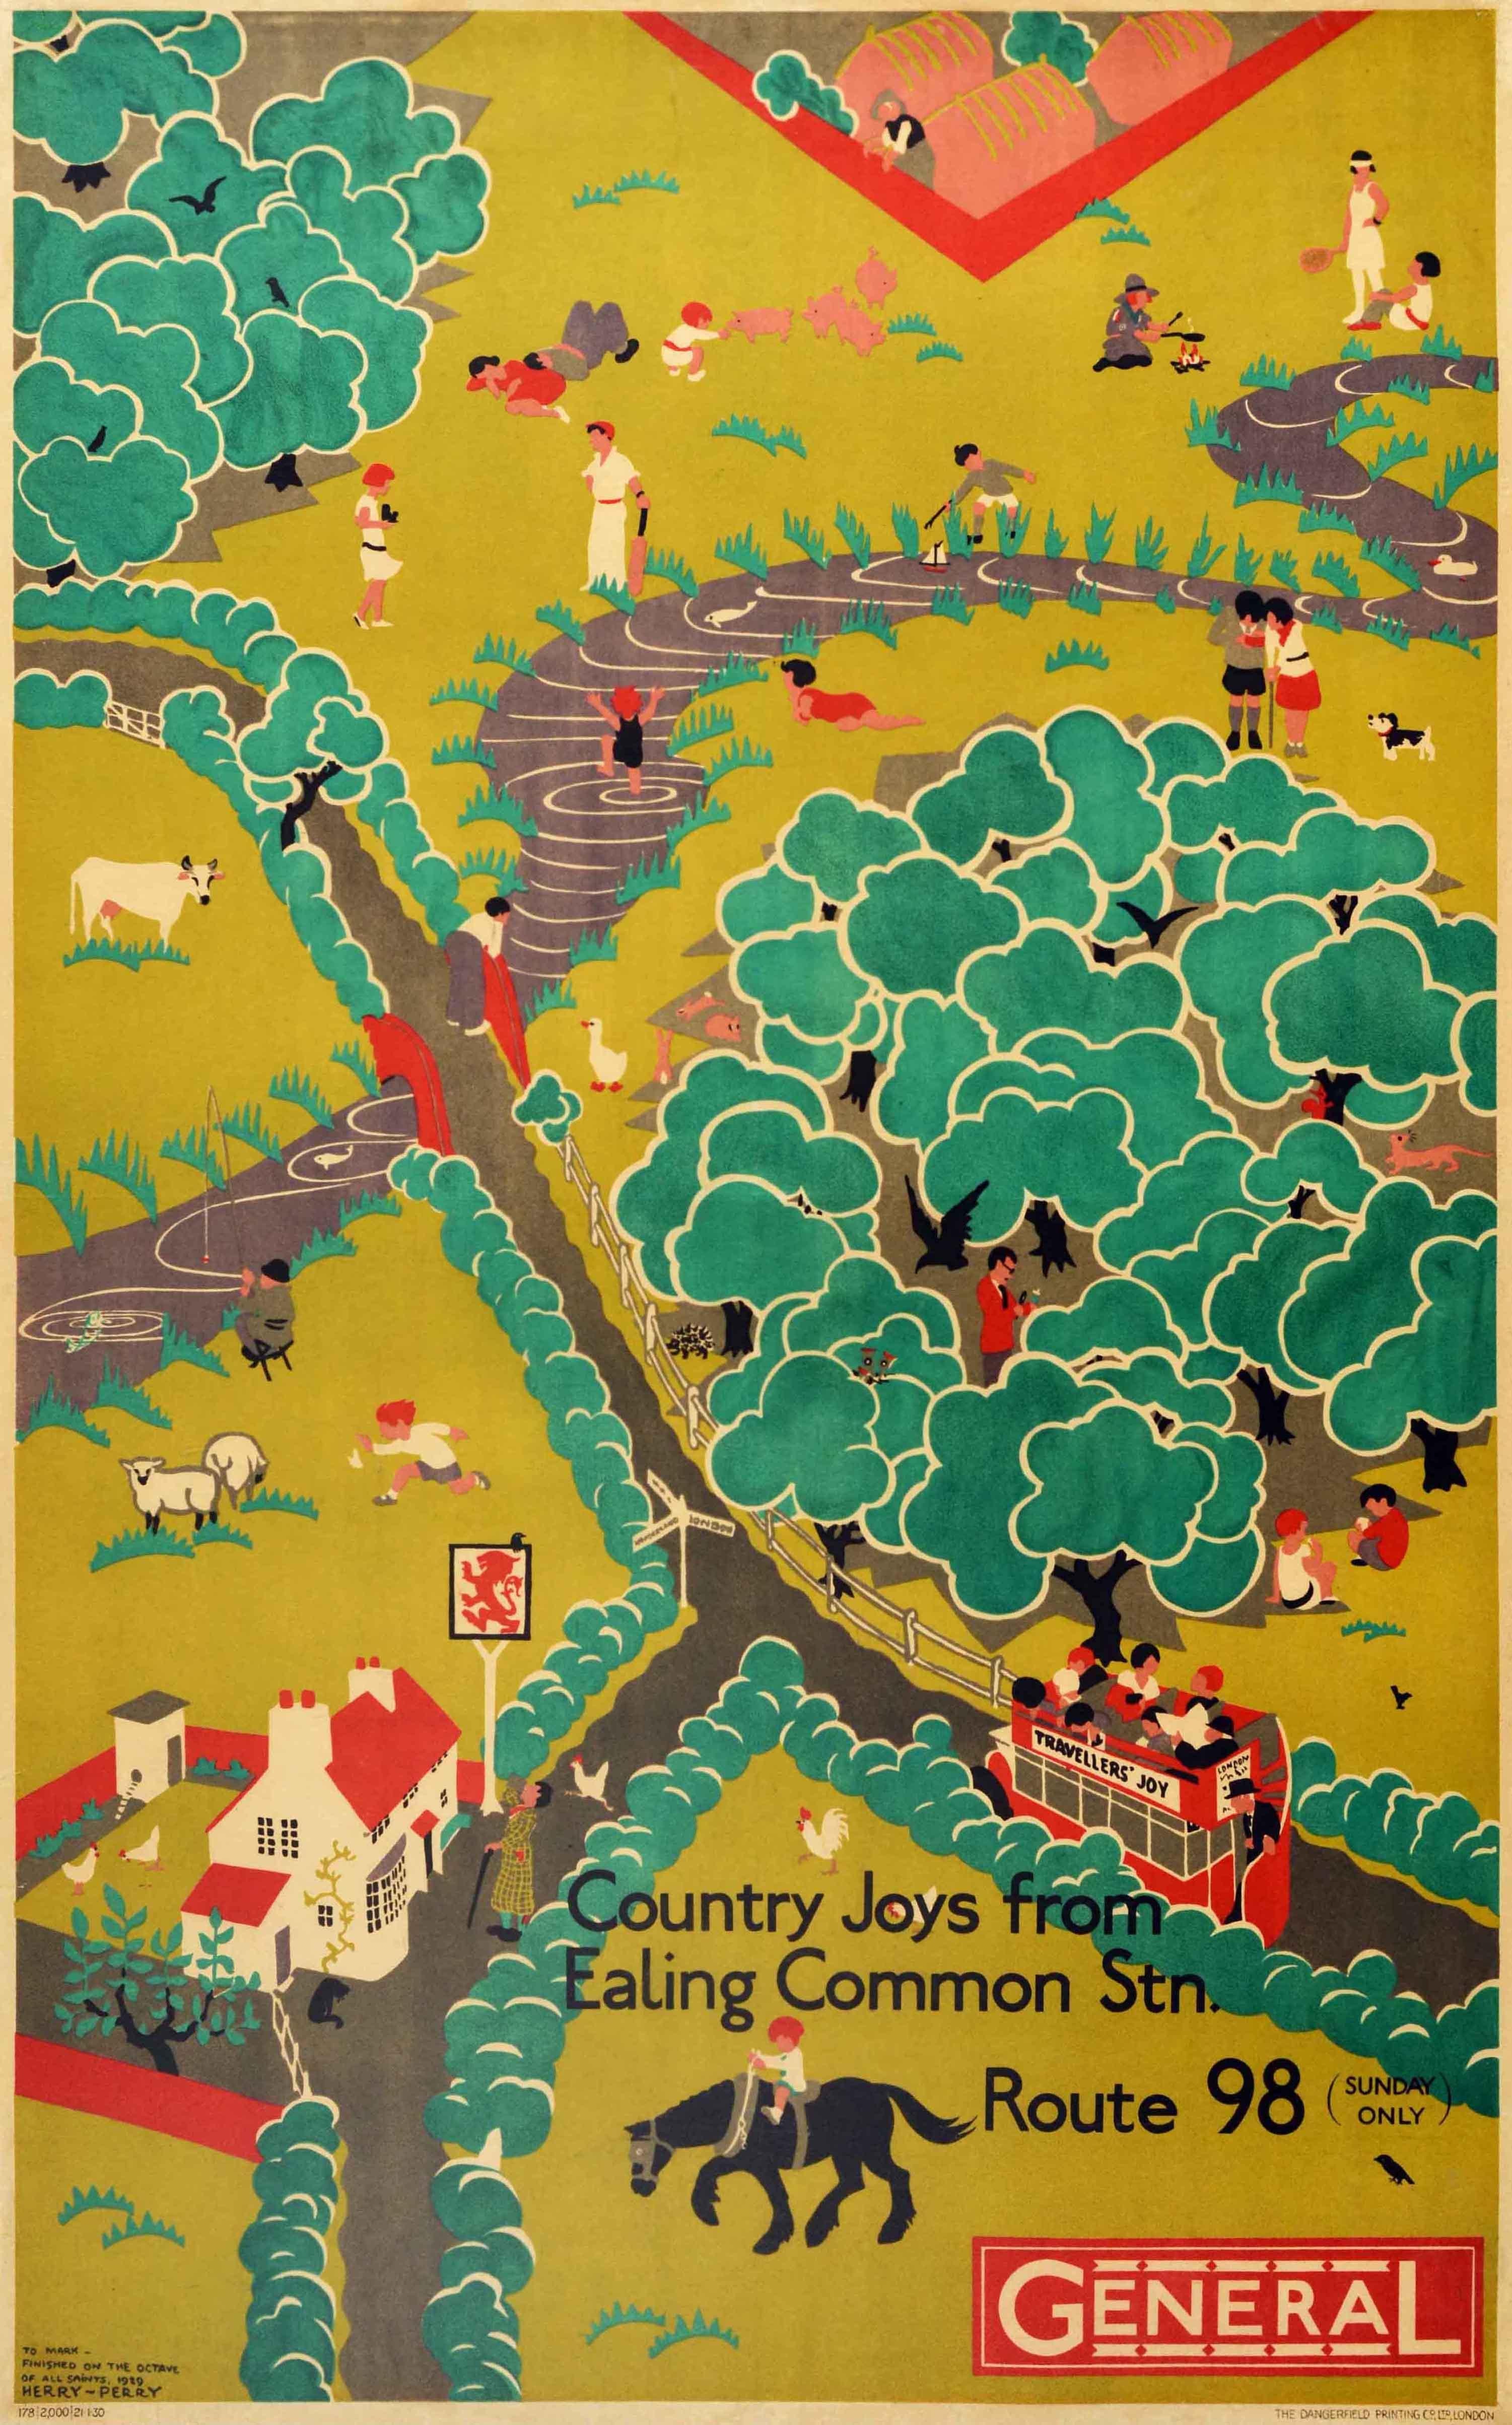 Original Vintage London Transport Reiseplakat - Country Joys von Ealing Common Station General Route 98 (Sunday Only) - mit atemberaubenden Kunstwerk von der britischen Künstlerin Heather Perry (Herry; 1893-1962), die Menschen in einem roten